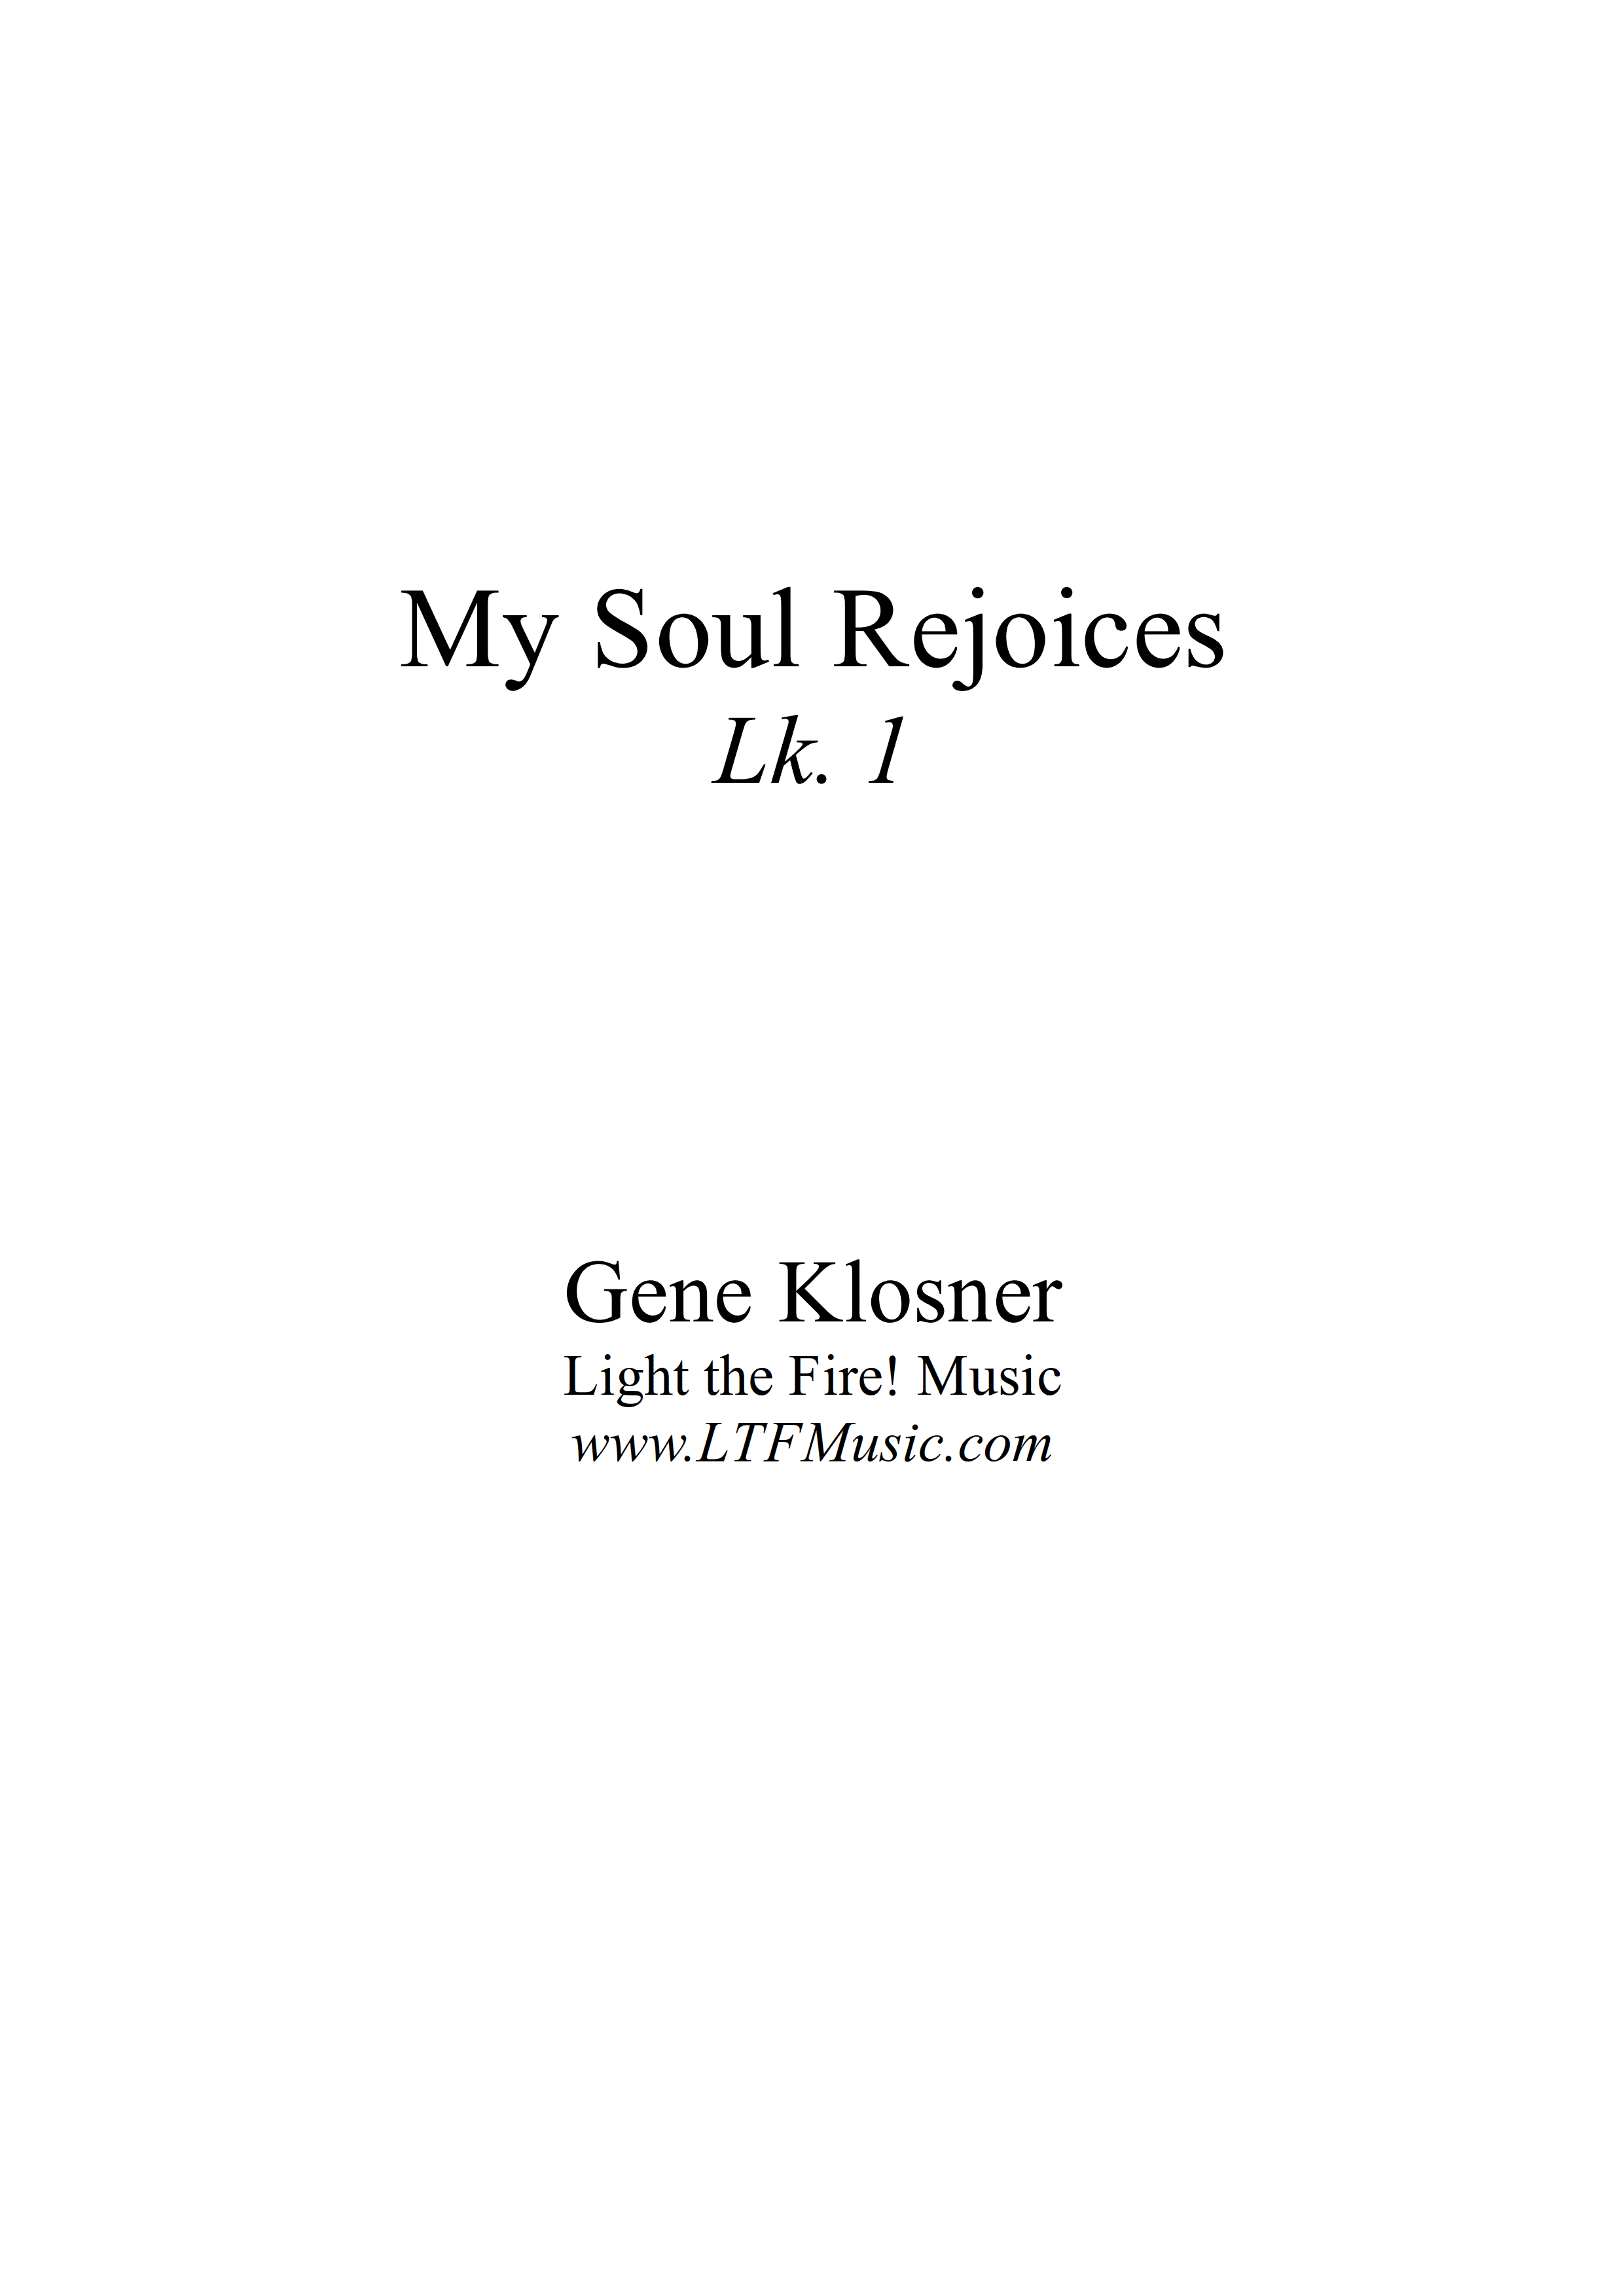 Luke 1 – My Soul Rejoices (Klosner)